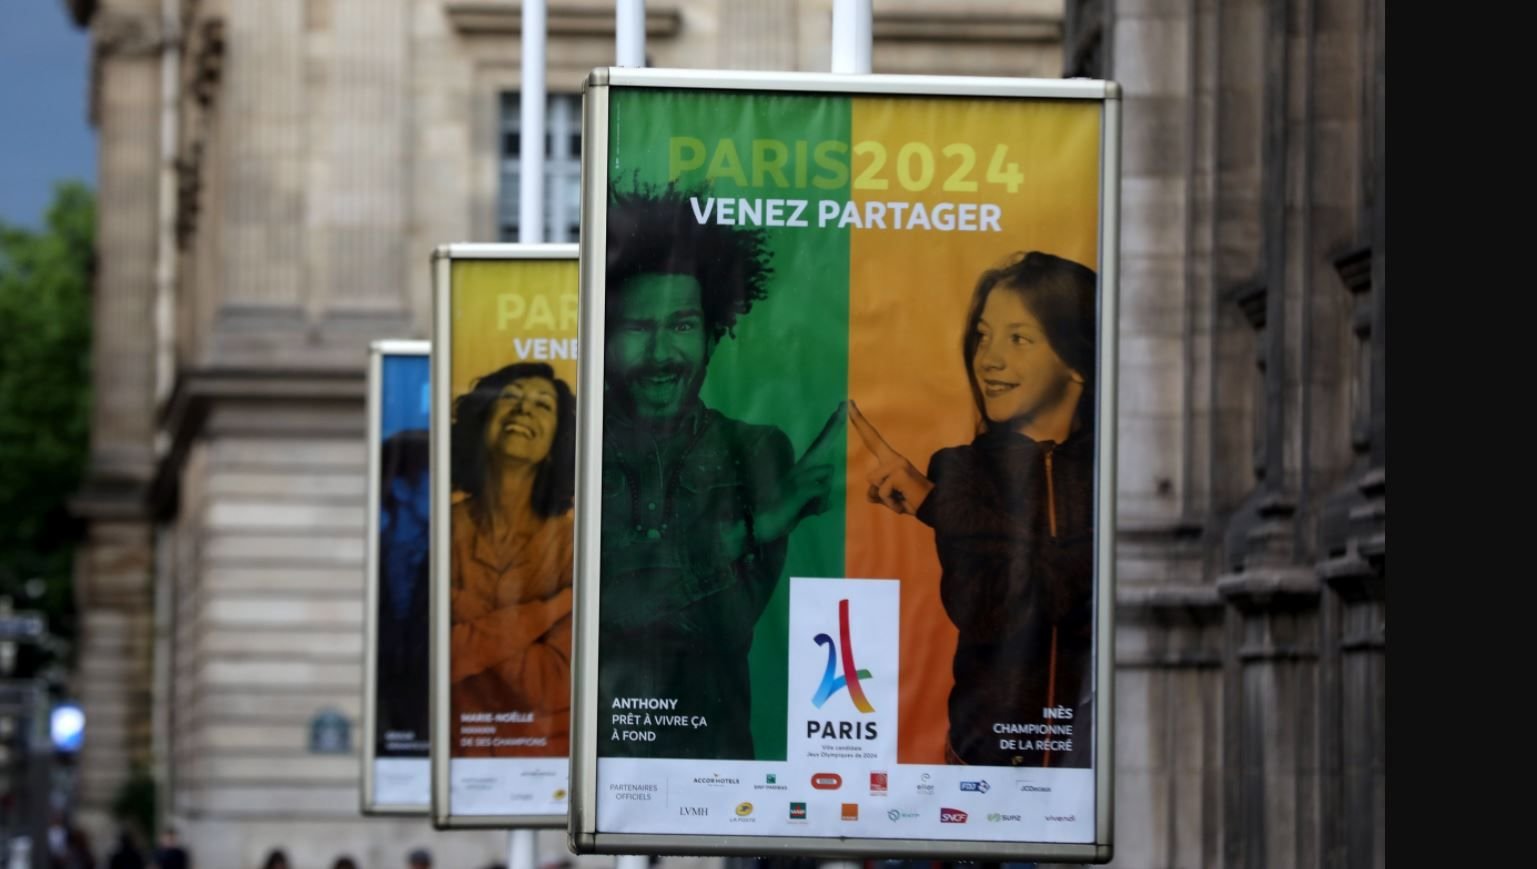 Ces panneaux d'affichage pour la candidature de Paris aux jeux Olympiques de 2024, illustrent aussi la volonté de partage entre culture et sport que veut initier Carine Rolland, adjointe à la maire de Paris en charge de la culture.